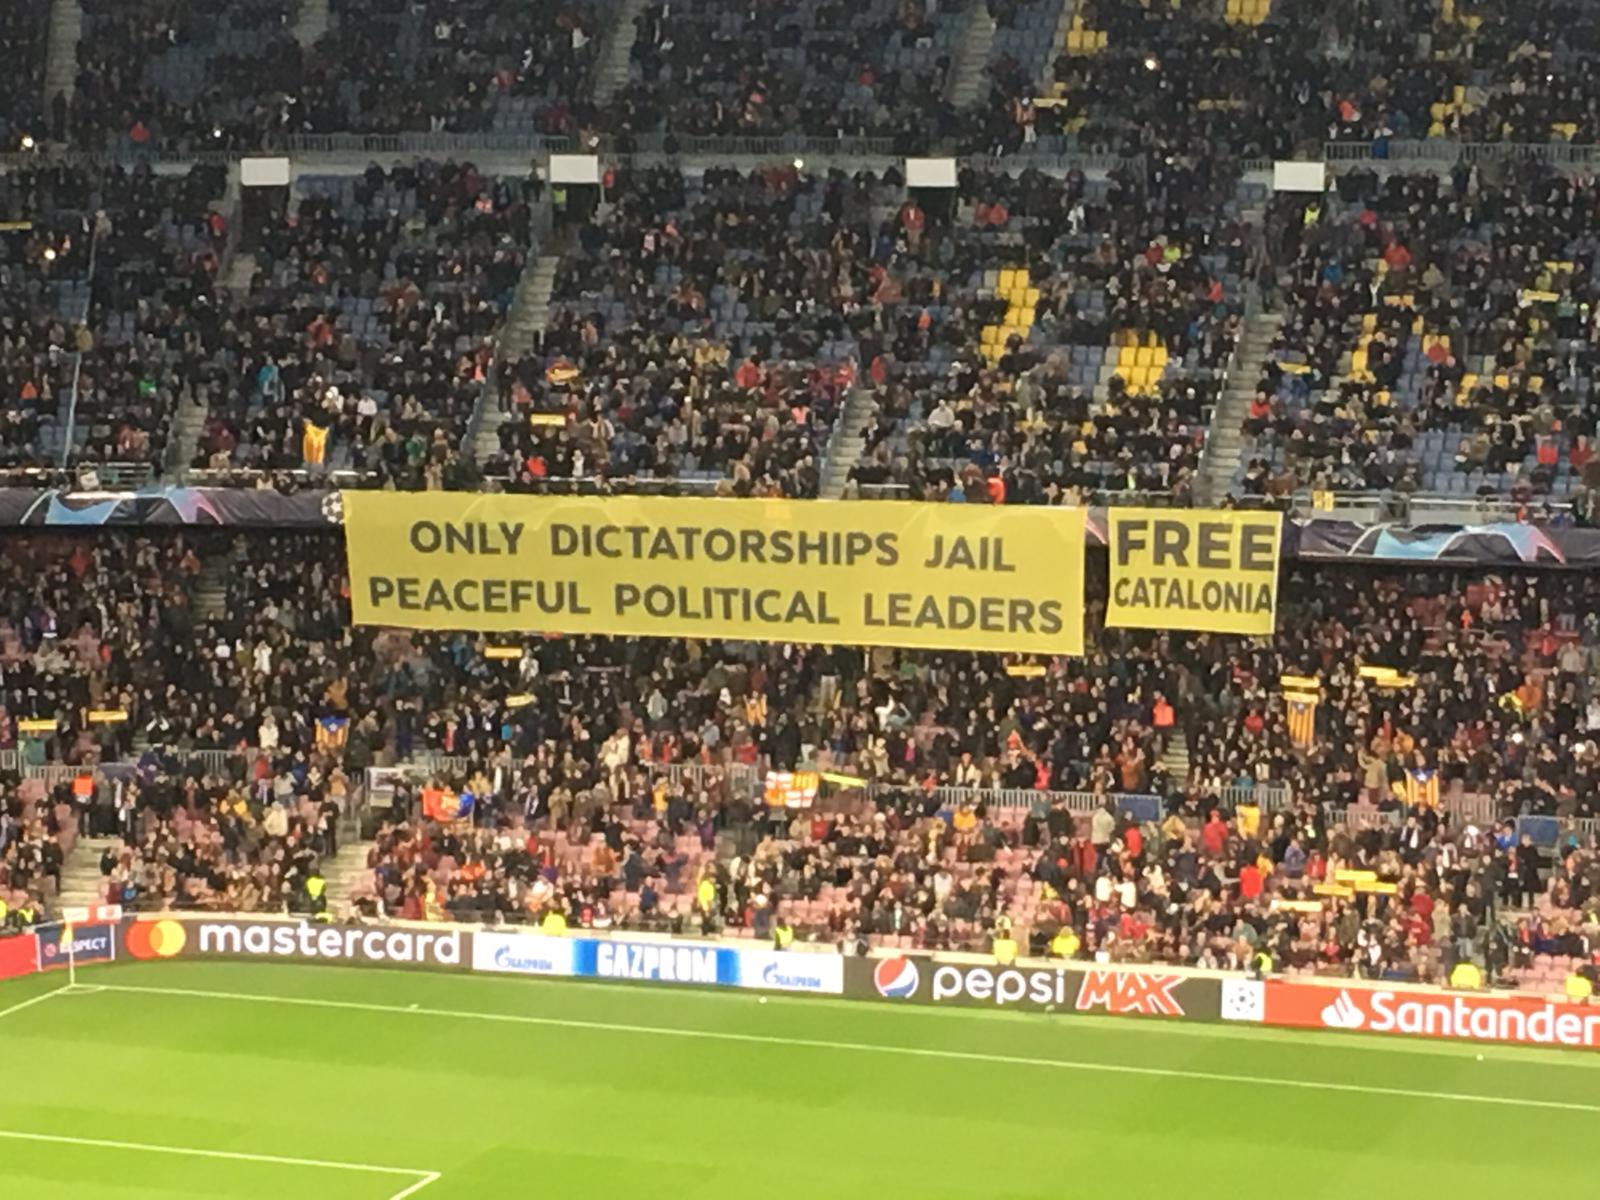 El Camp Nou reclama la libertad de los presos y los apoya en la huelga de hambre